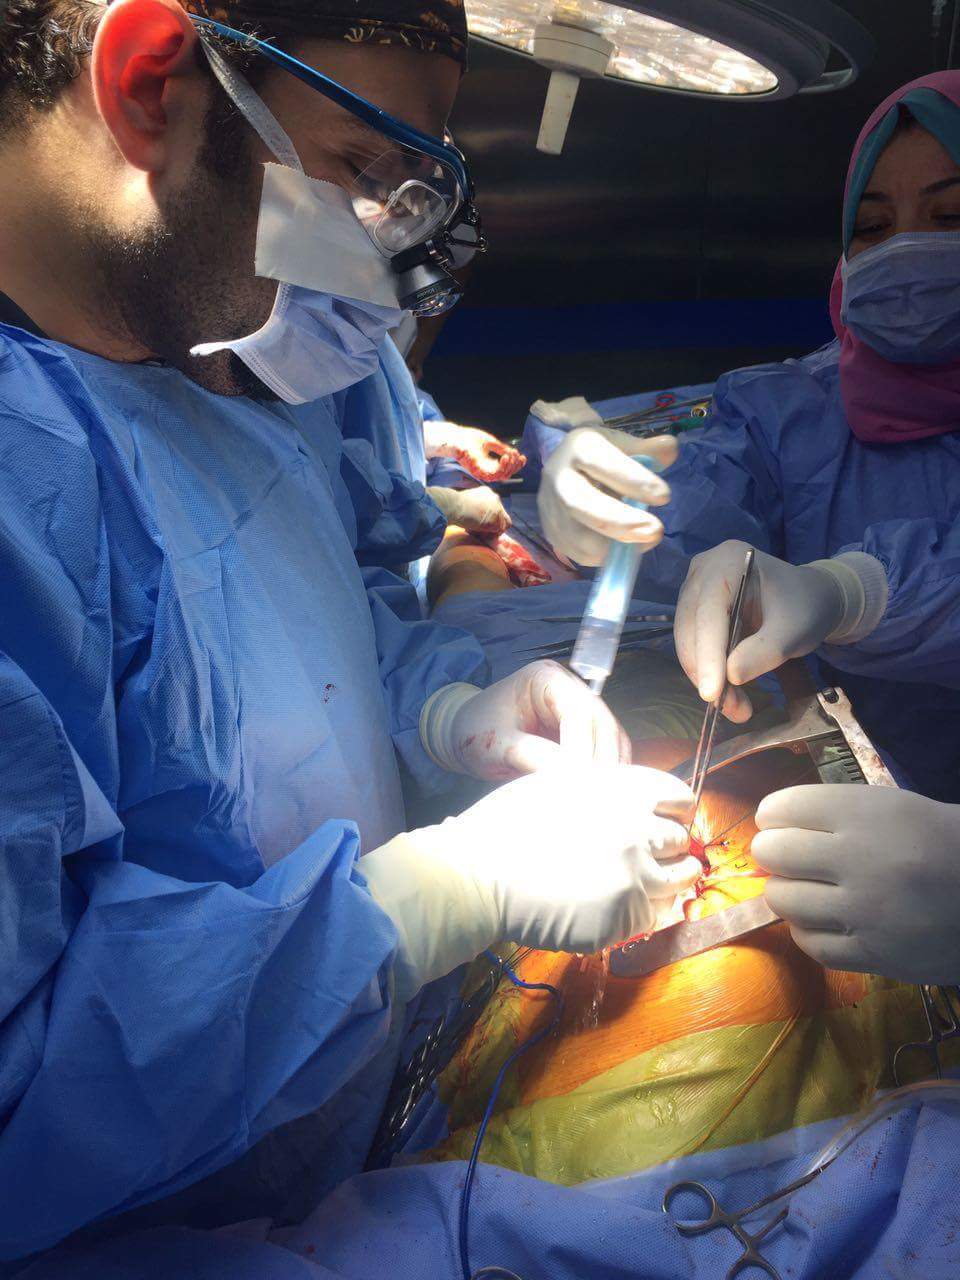 الفريق الطبى أثناء الجراحة